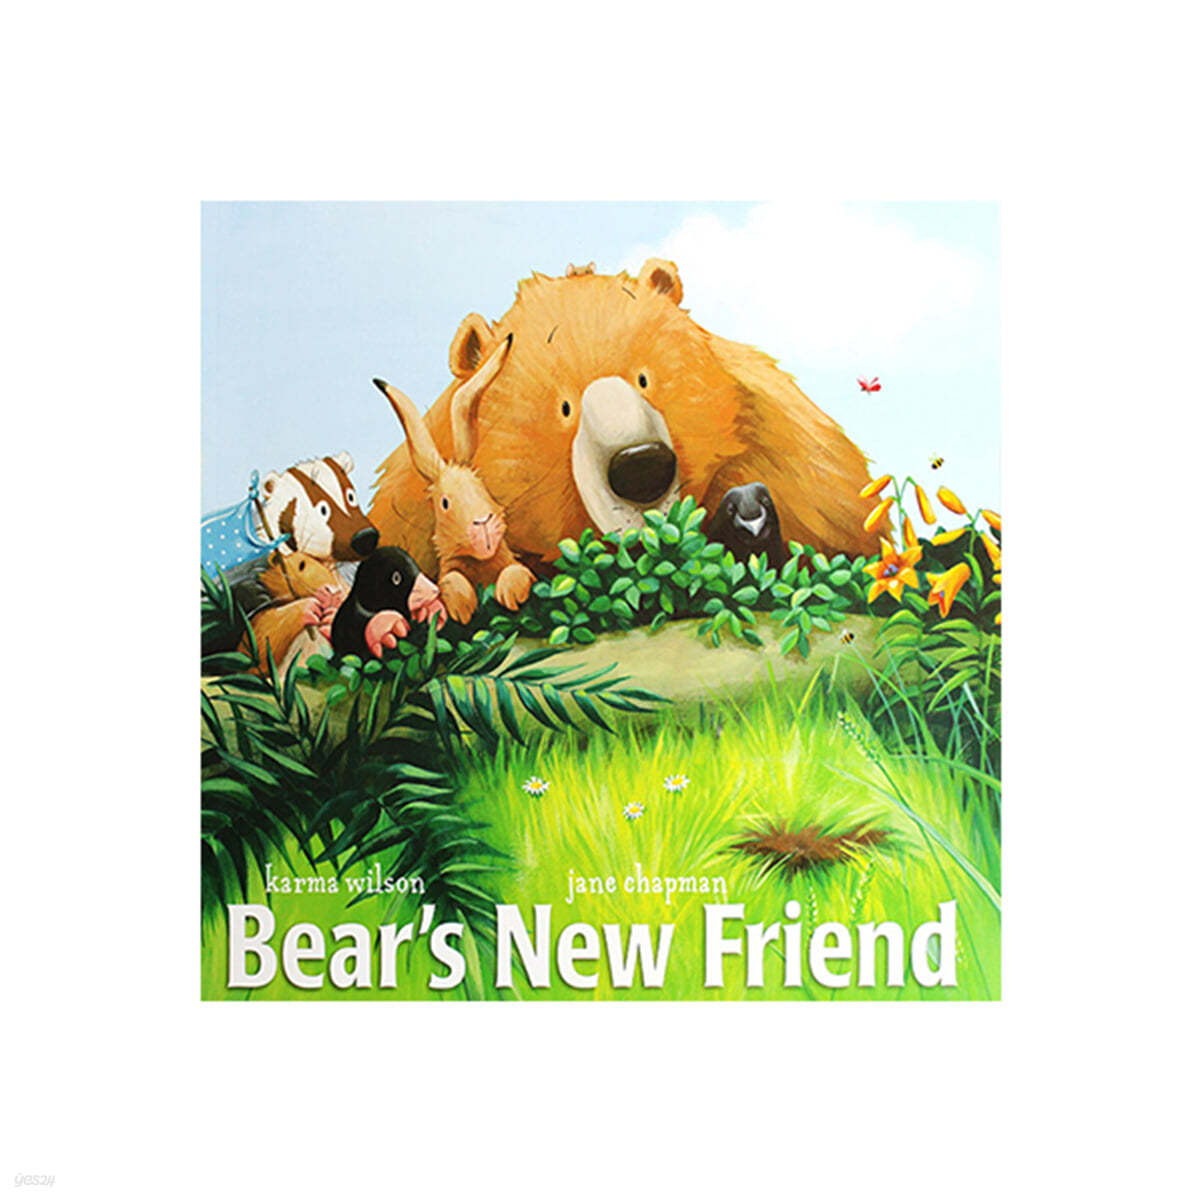 Bear's new friend